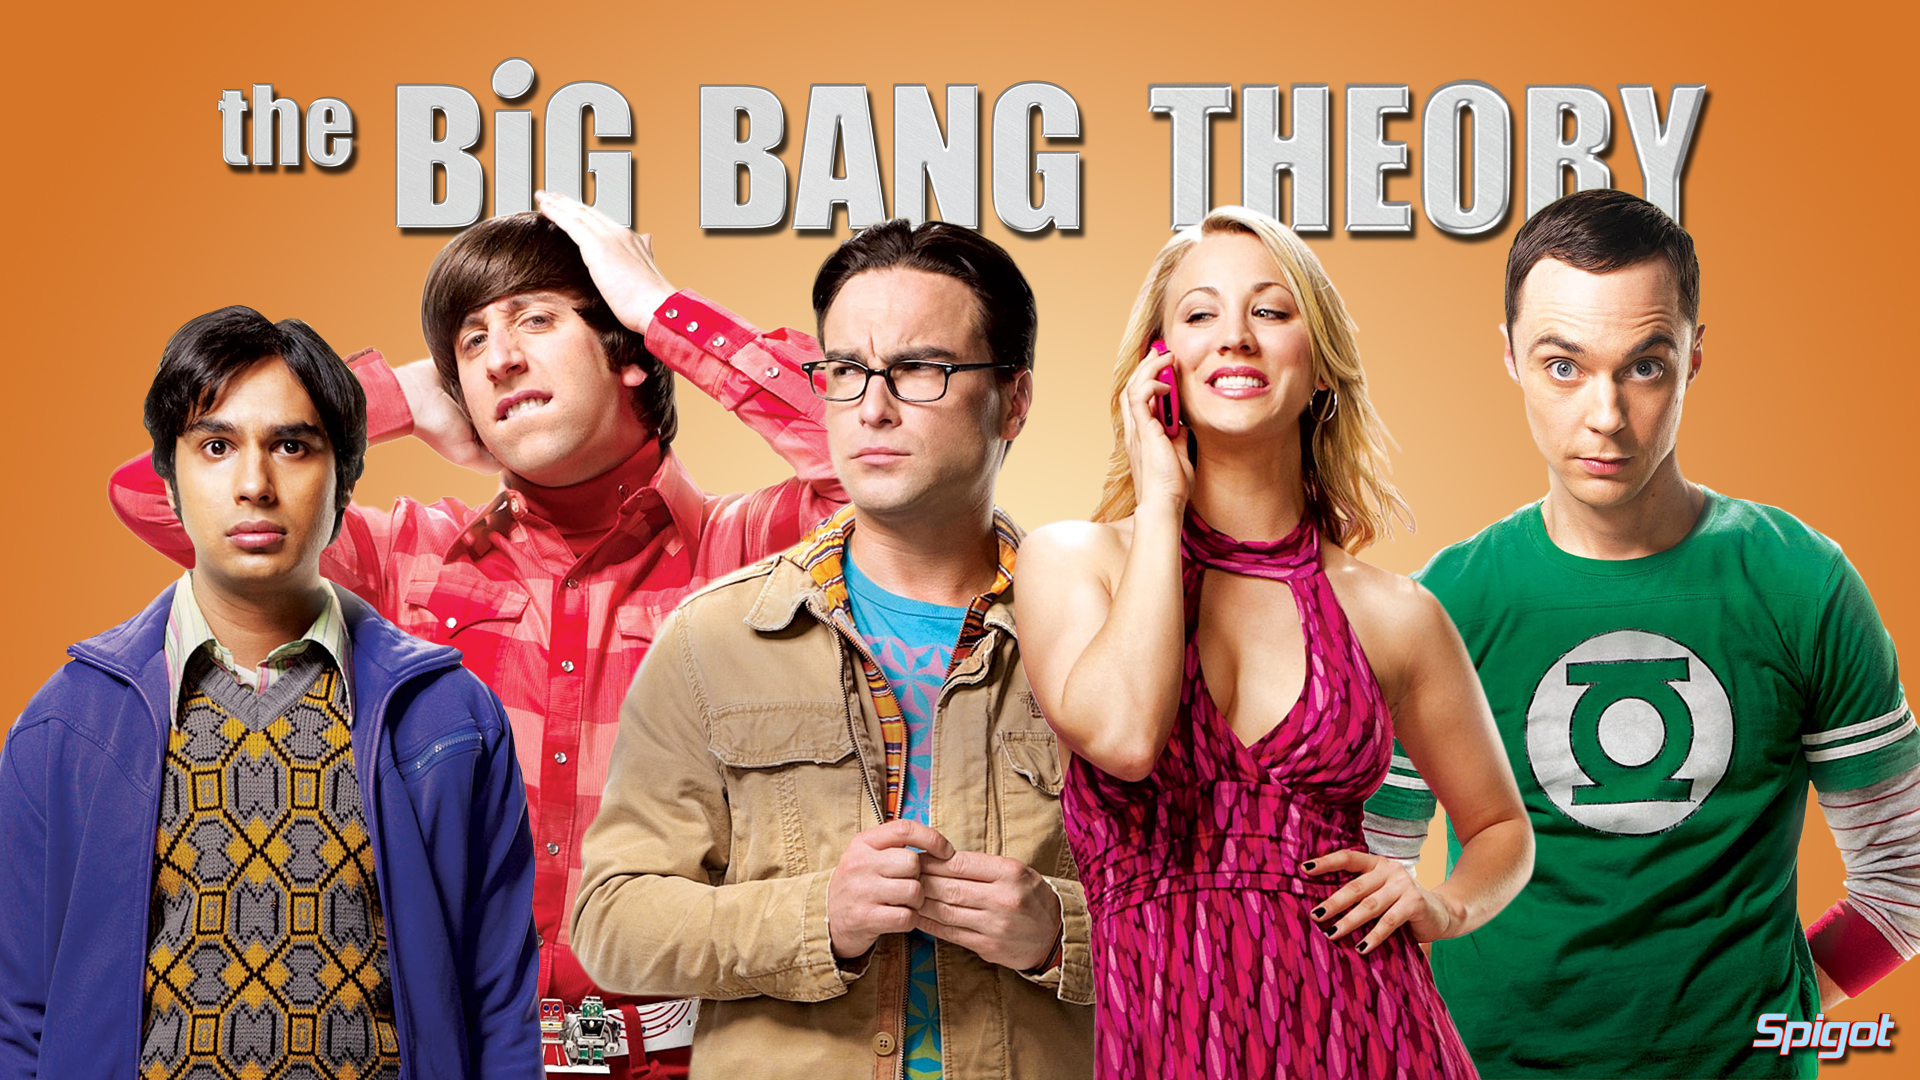 The Big Bang Theory #8